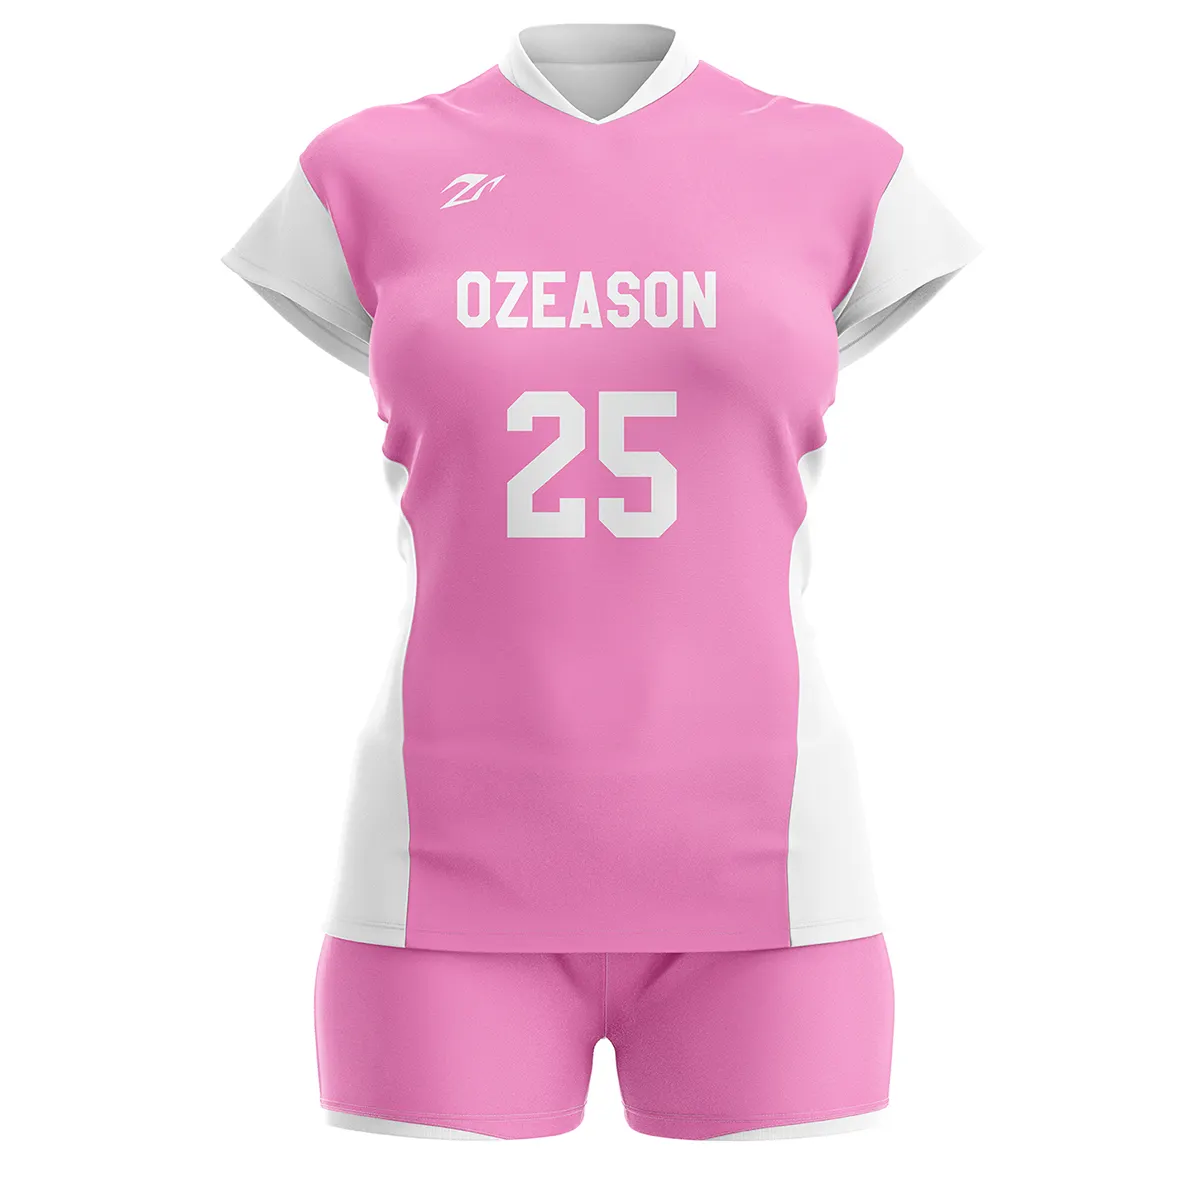 A basso prezzo all'ingrosso rosa maglia da pallavolo logo personalizzato poliestere donne divise da pallavolo